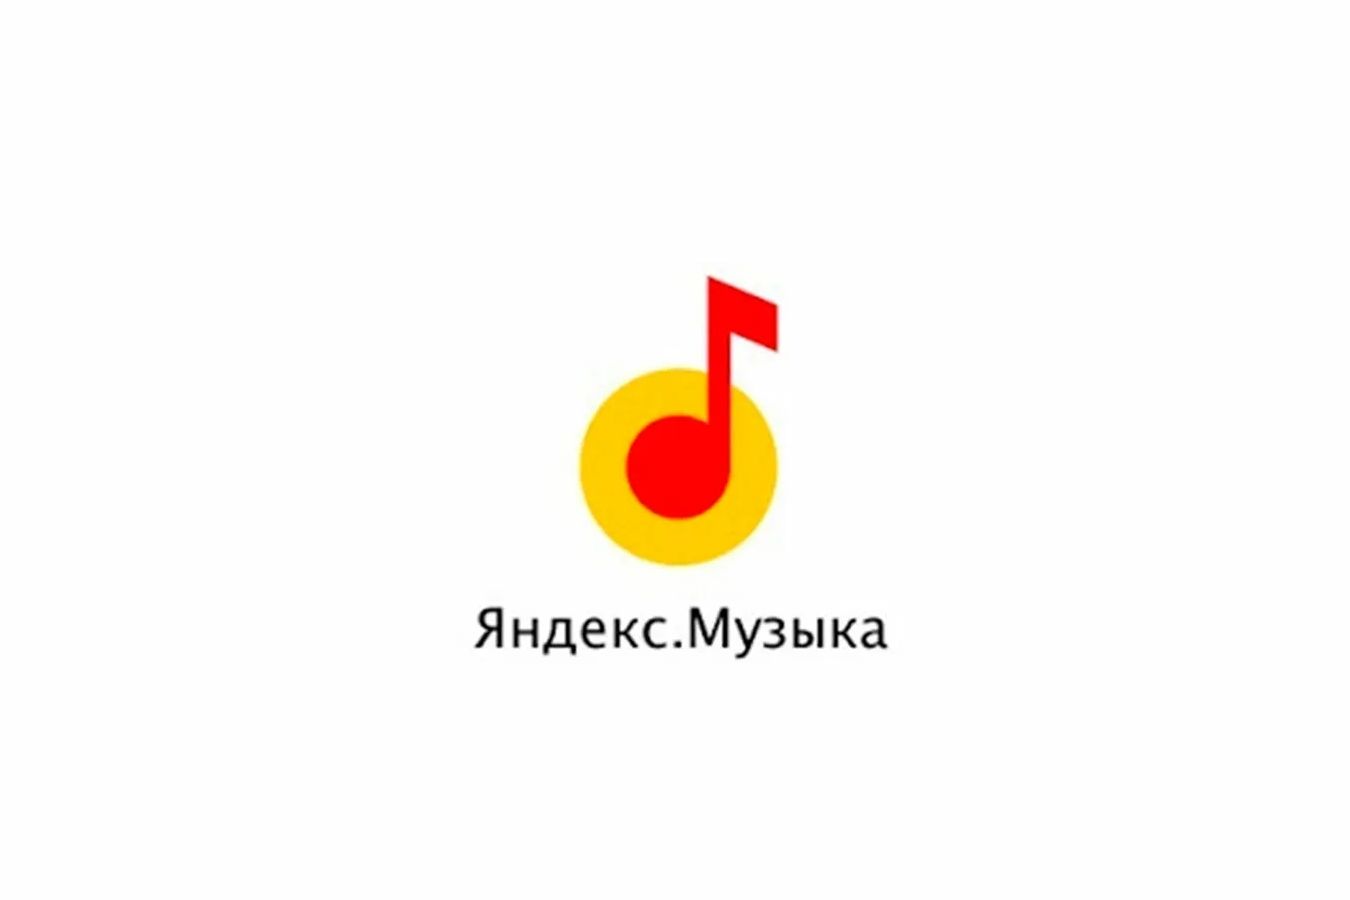 Яндекс музыка с бесконечной подпиской телеграмм фото 33